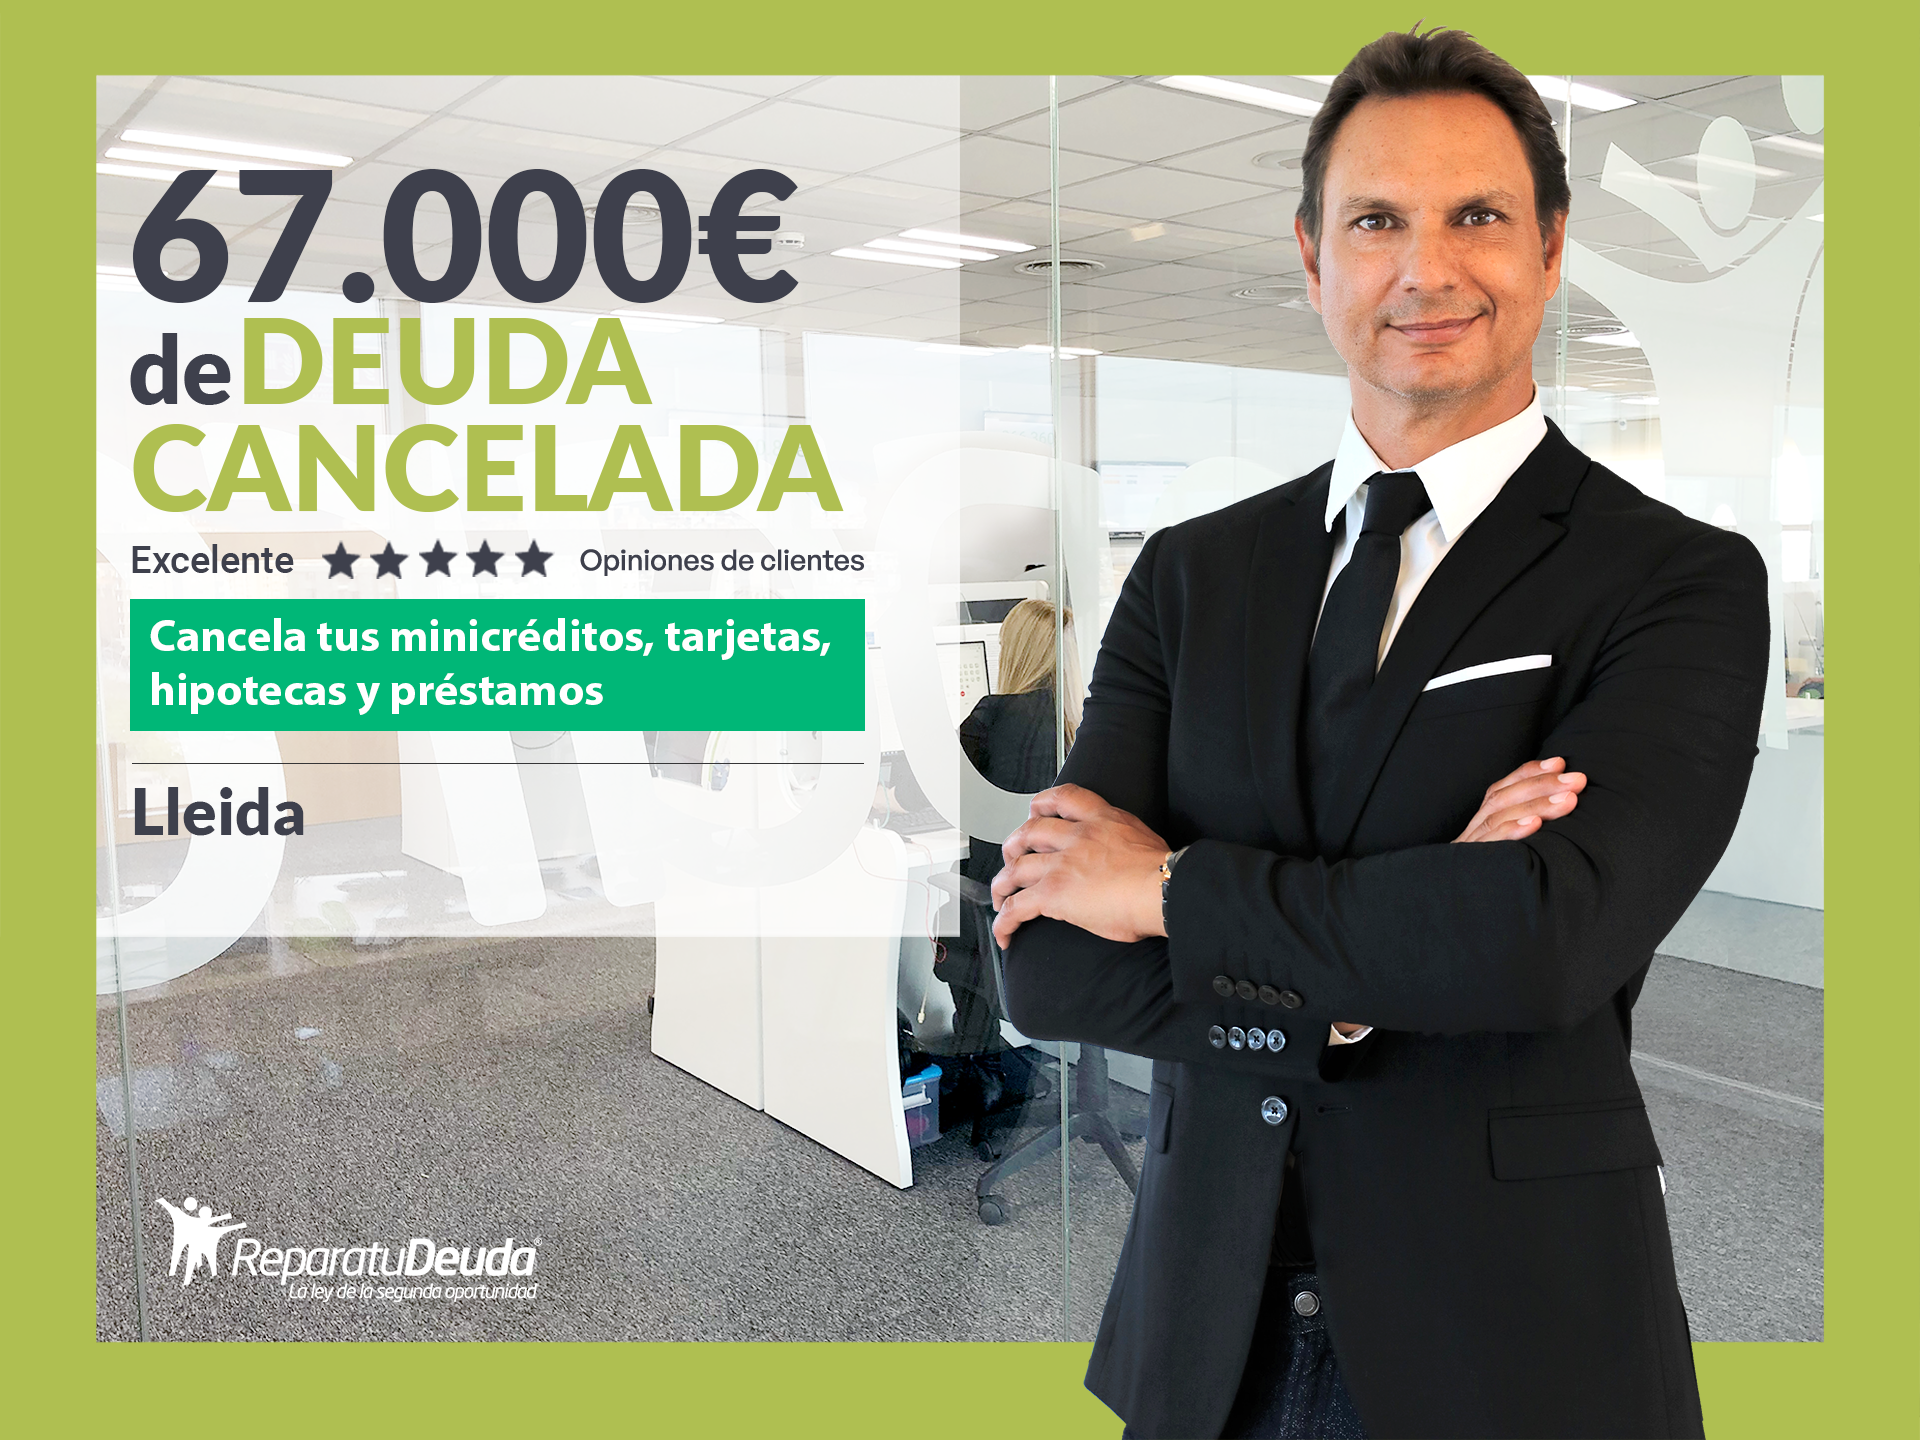 Repara tu Deuda Abogados cancela 67.000? en Lleida (Catalunya) gracias a la Ley de Segunda Oportunidad